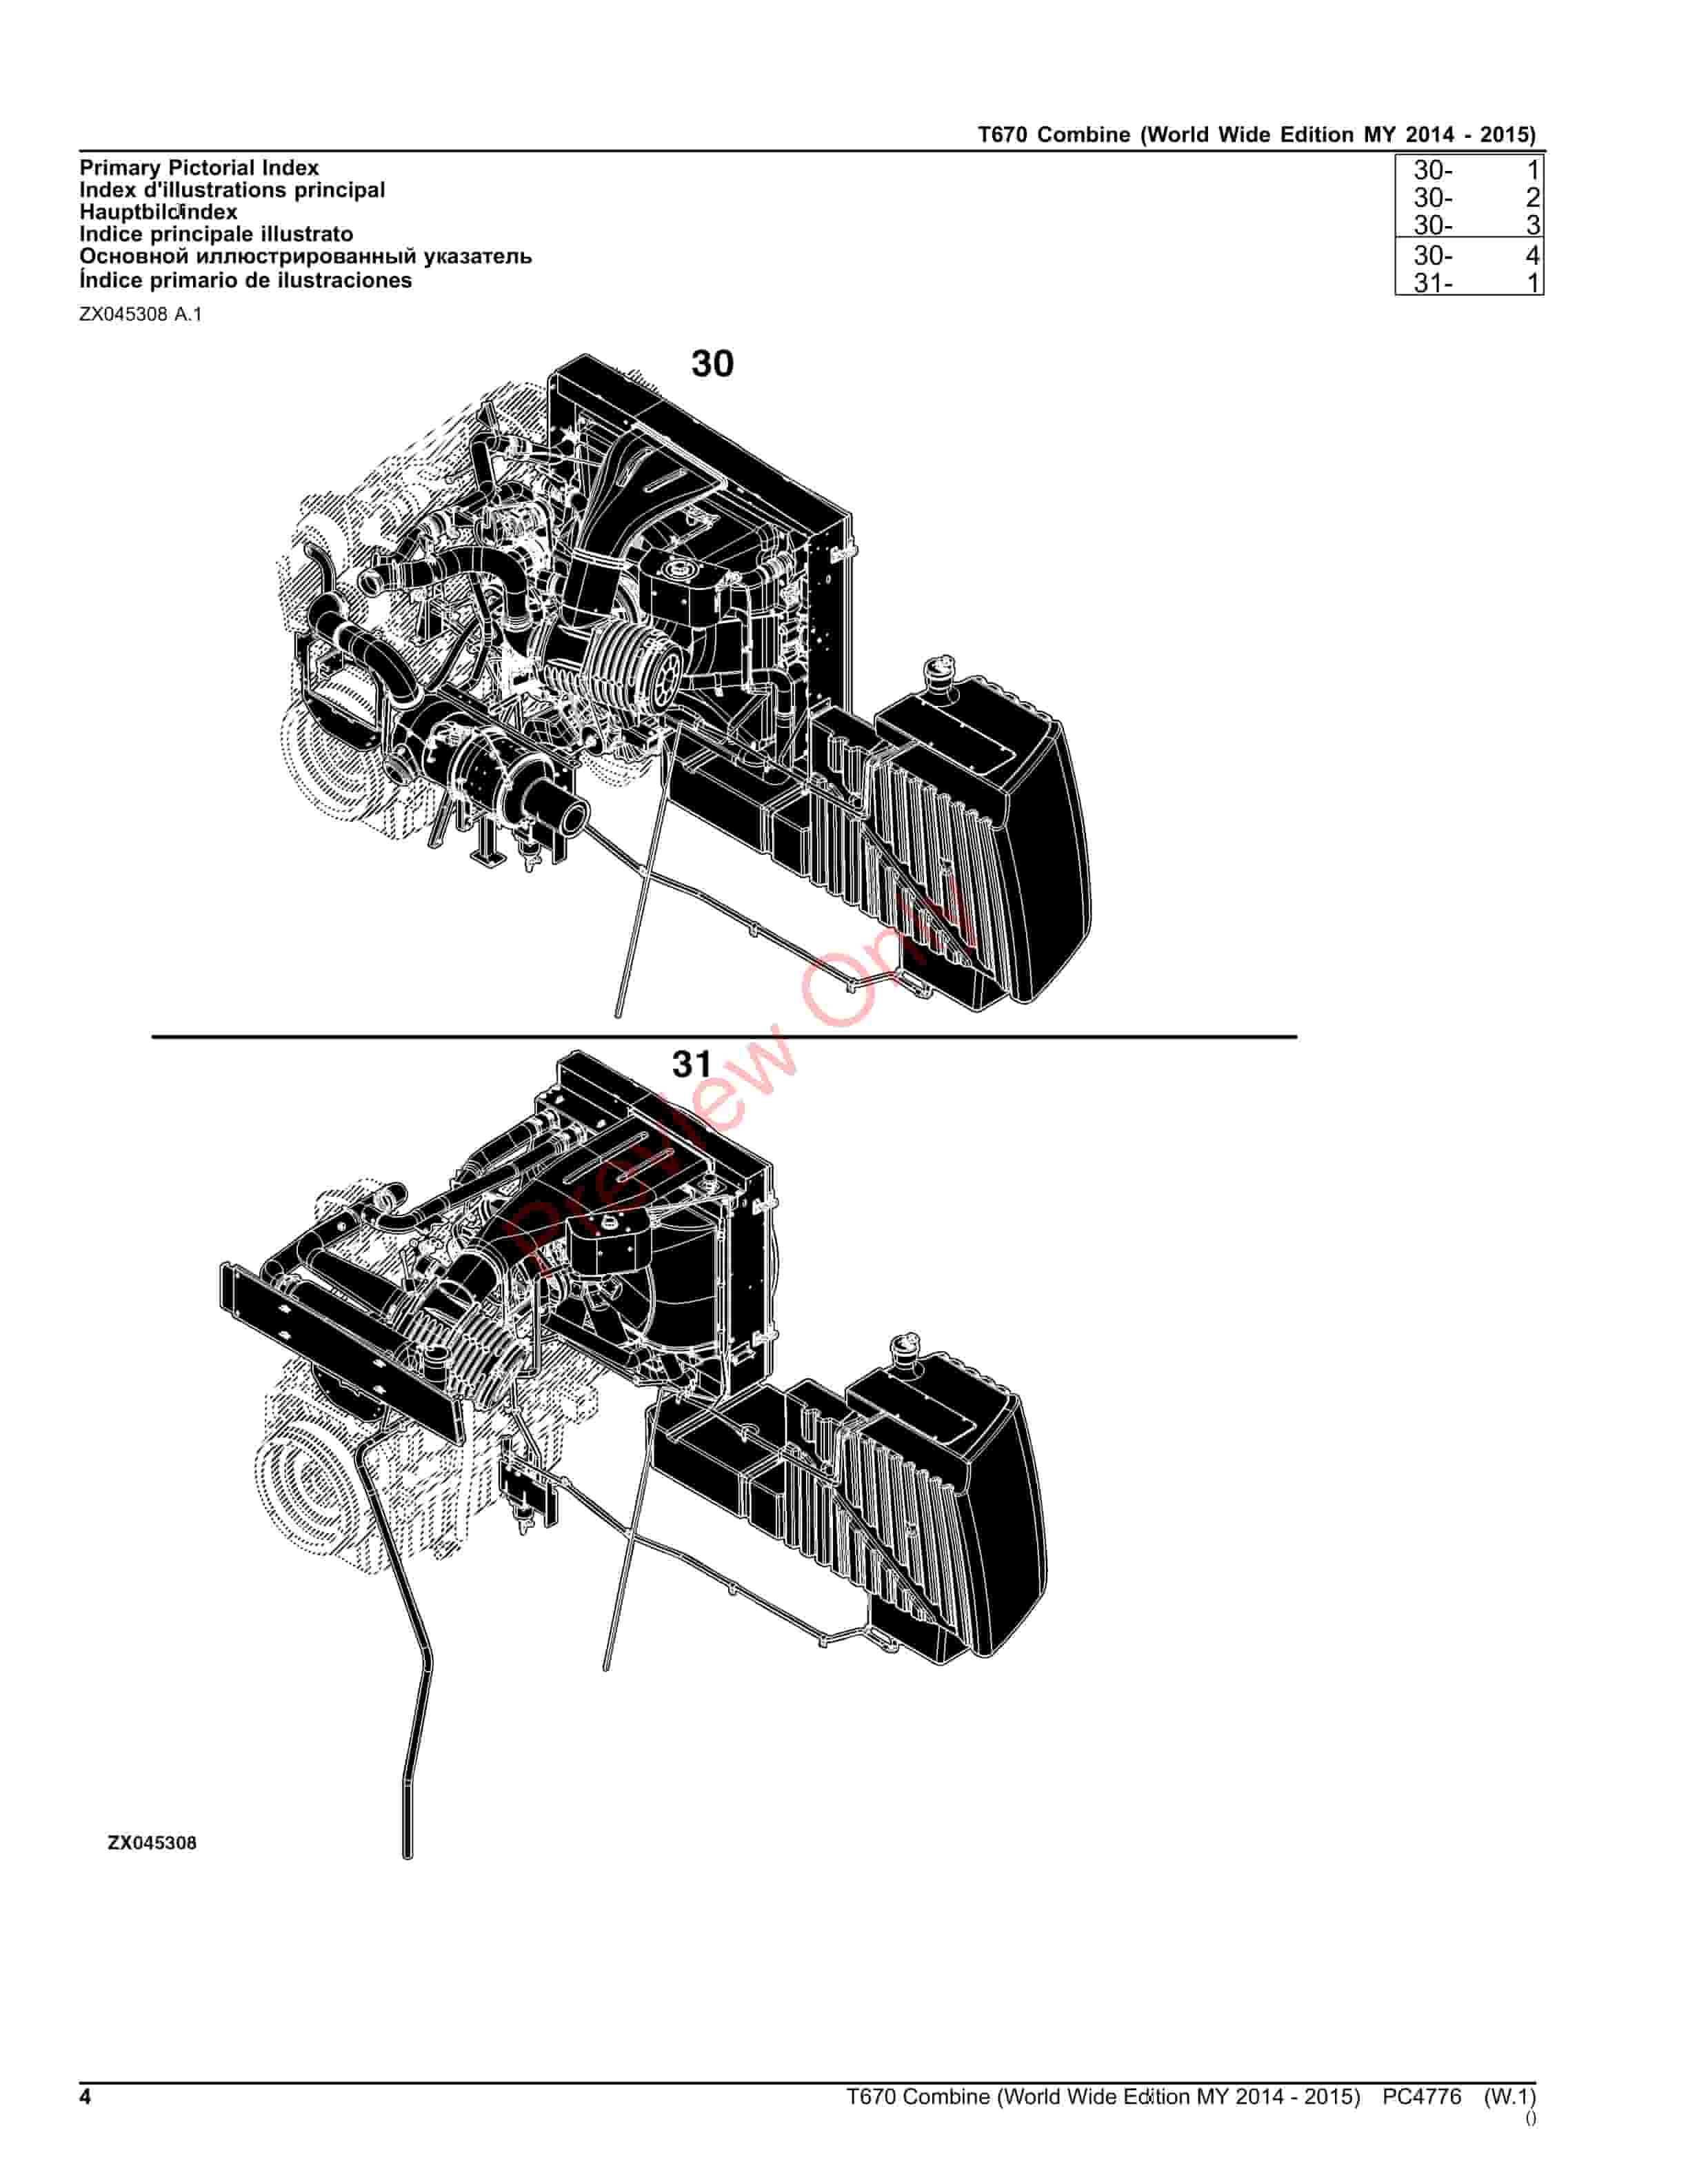 John Deere T670 Combine Parts Catalog PC4776 06OCT23-4